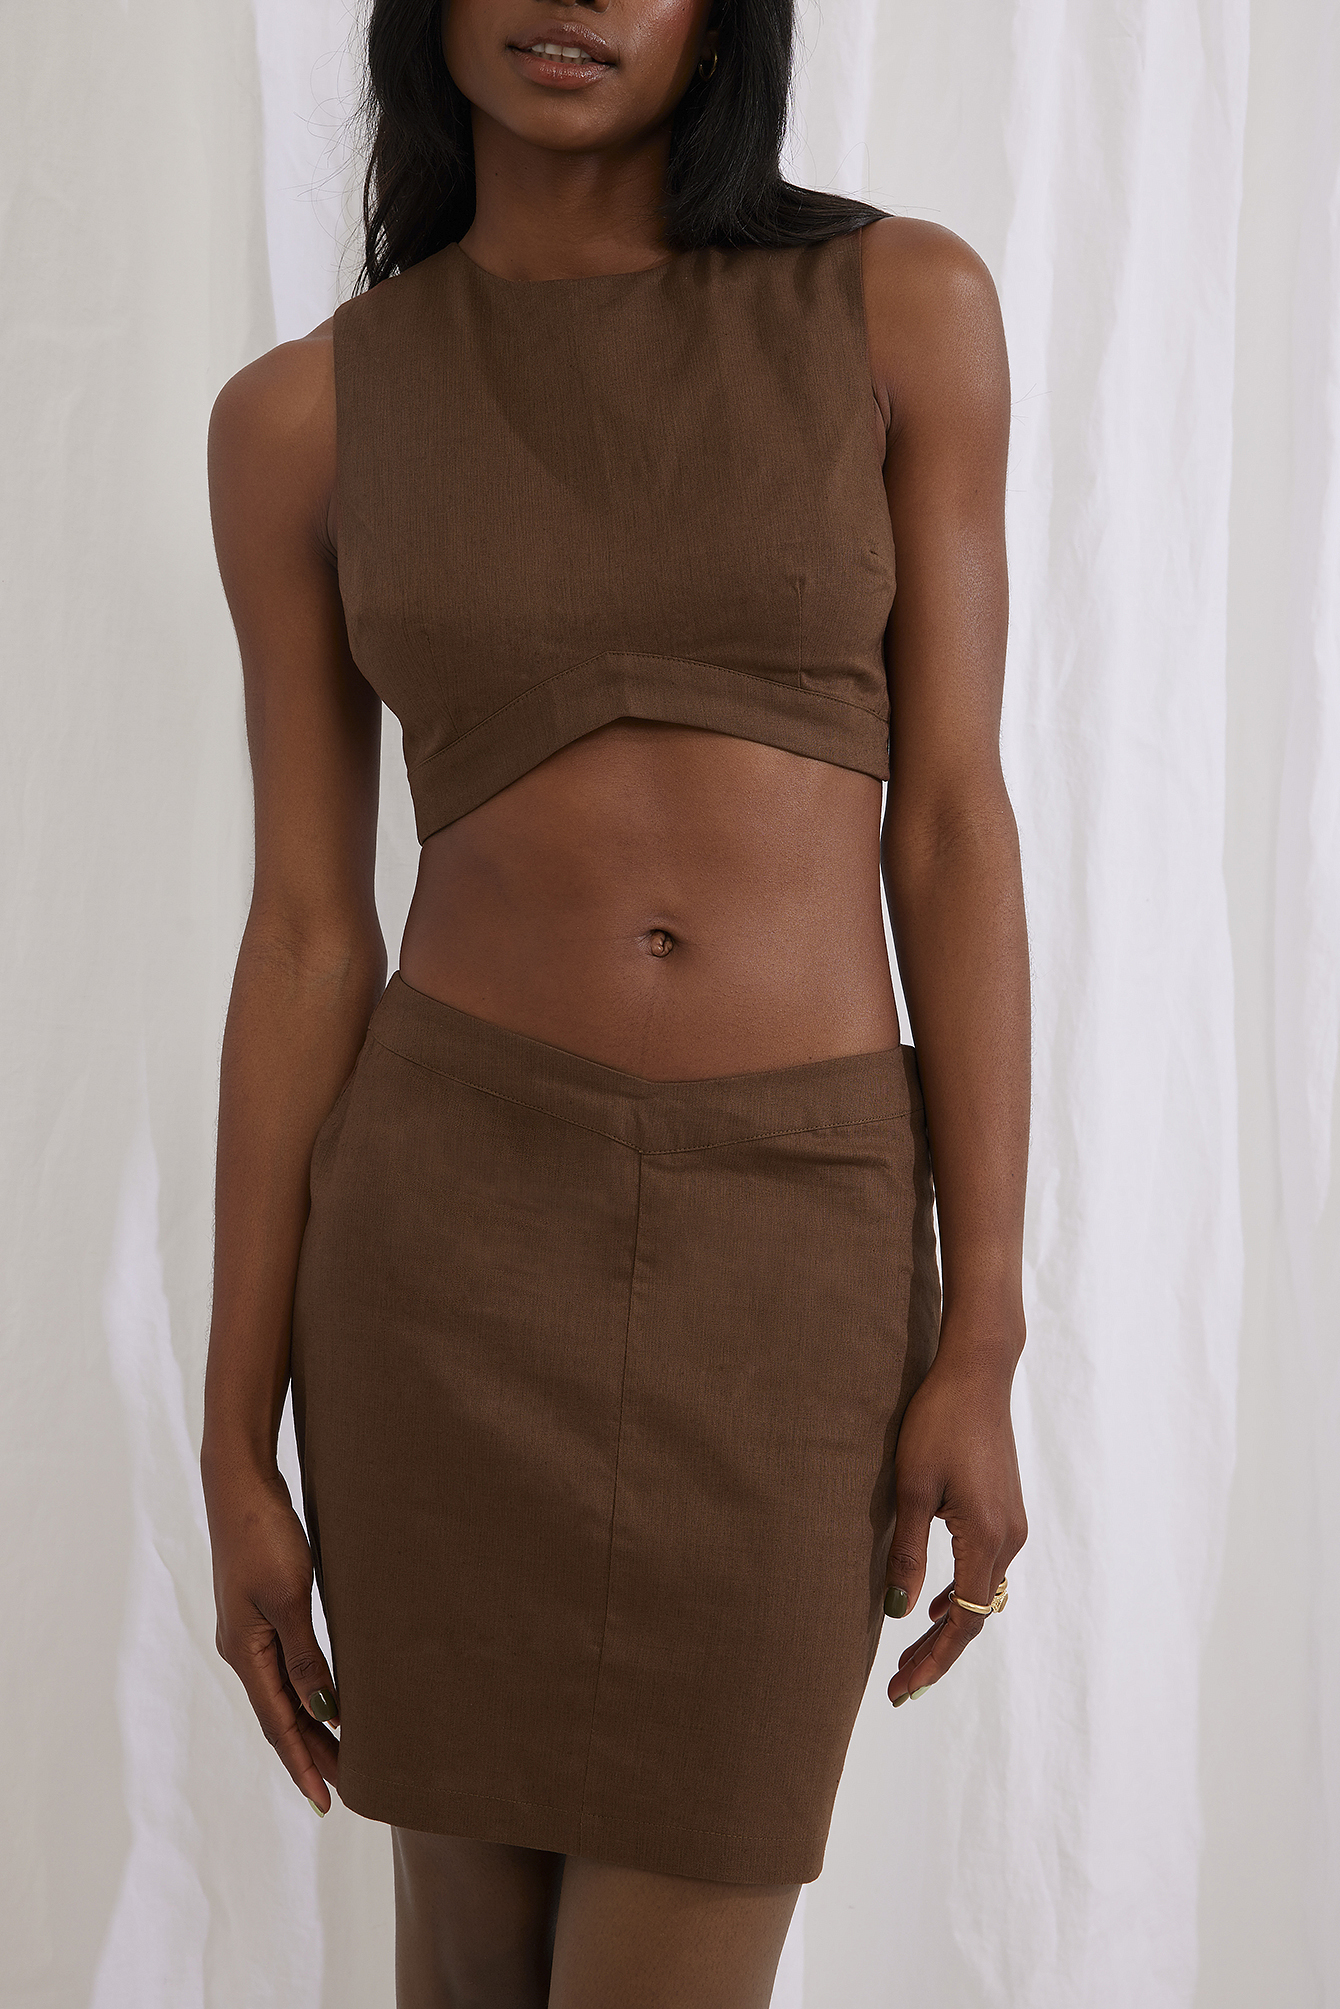 Buy SmisingBee Womens Brown Velvet Short Skirt at Amazonin